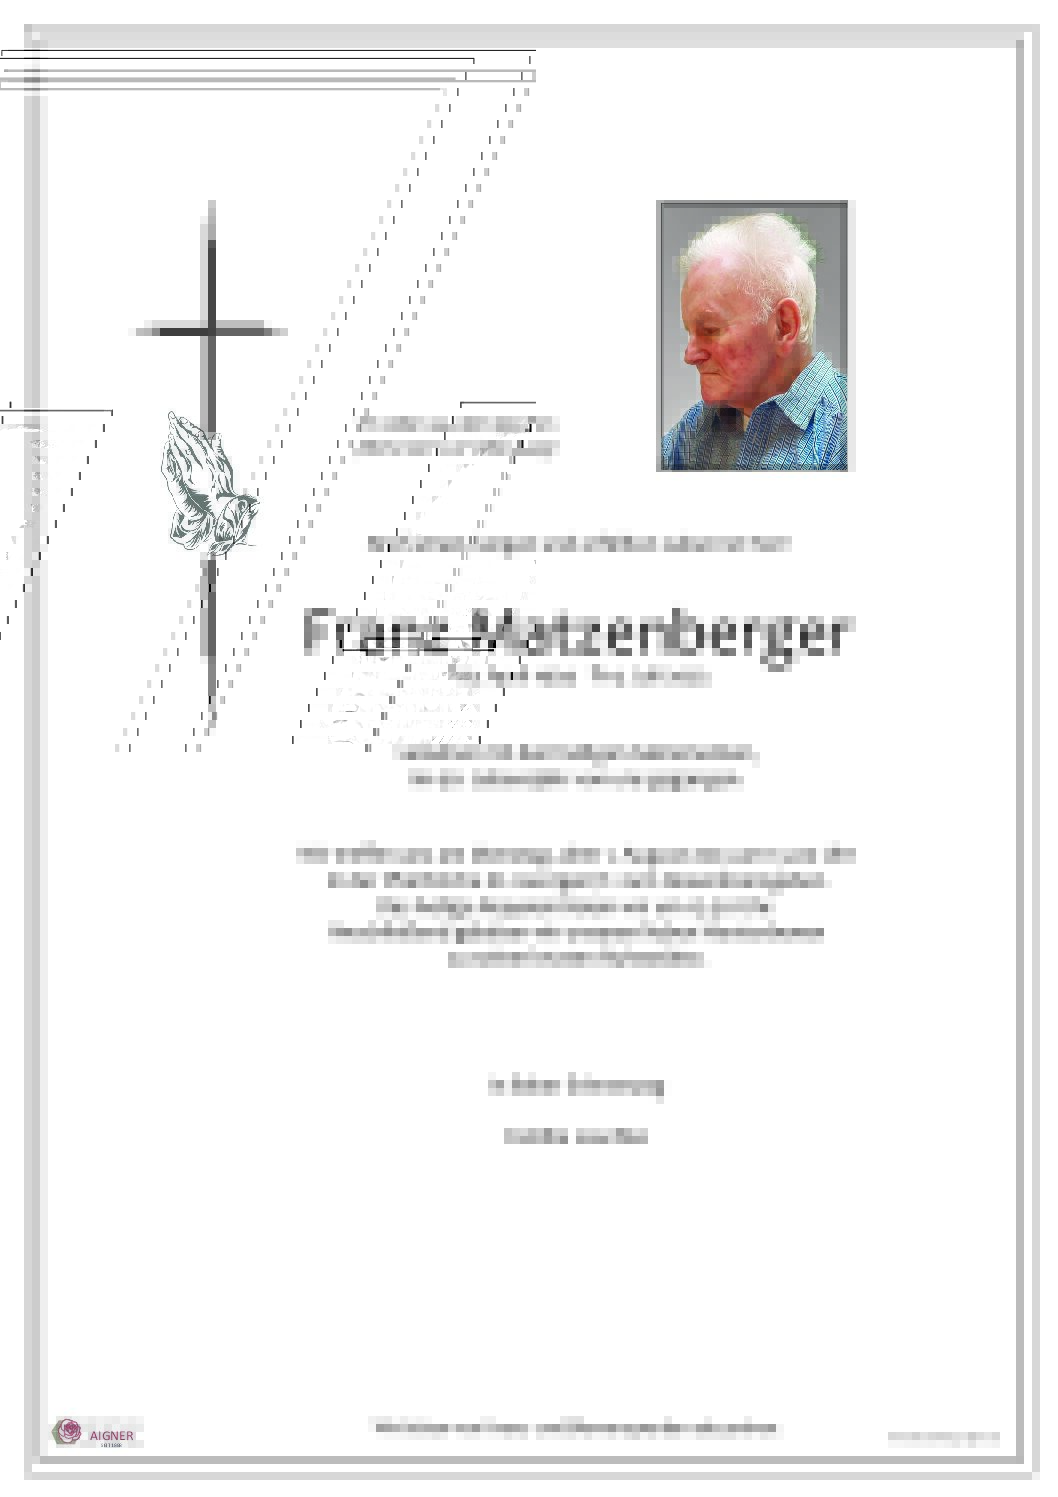 Franz Matzenberger